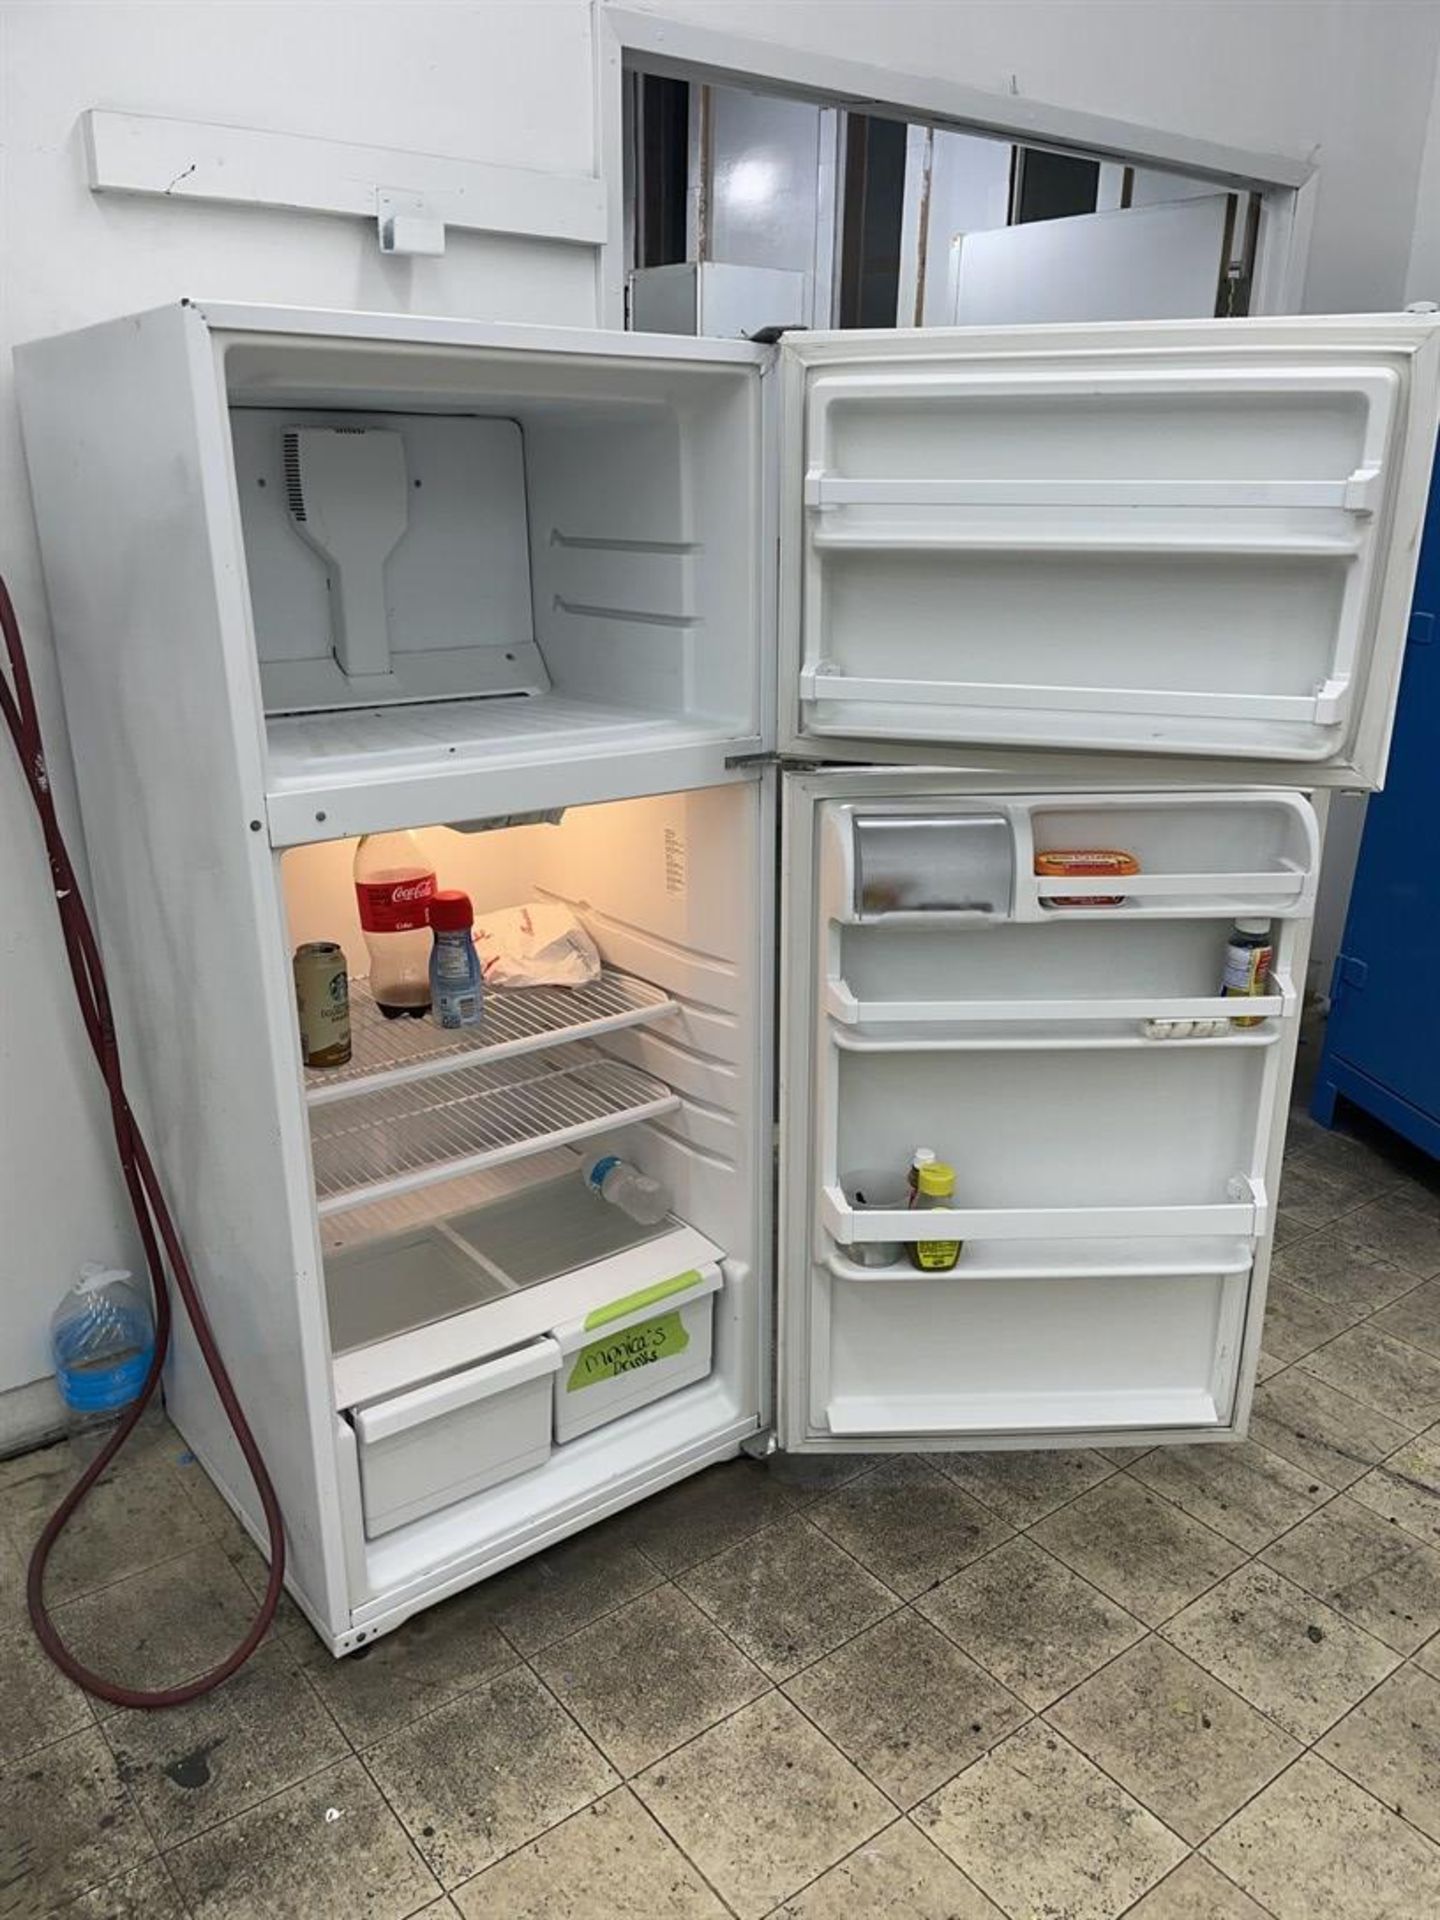 WHIRLPOOL Refrigerator/Freezer - Image 2 of 2